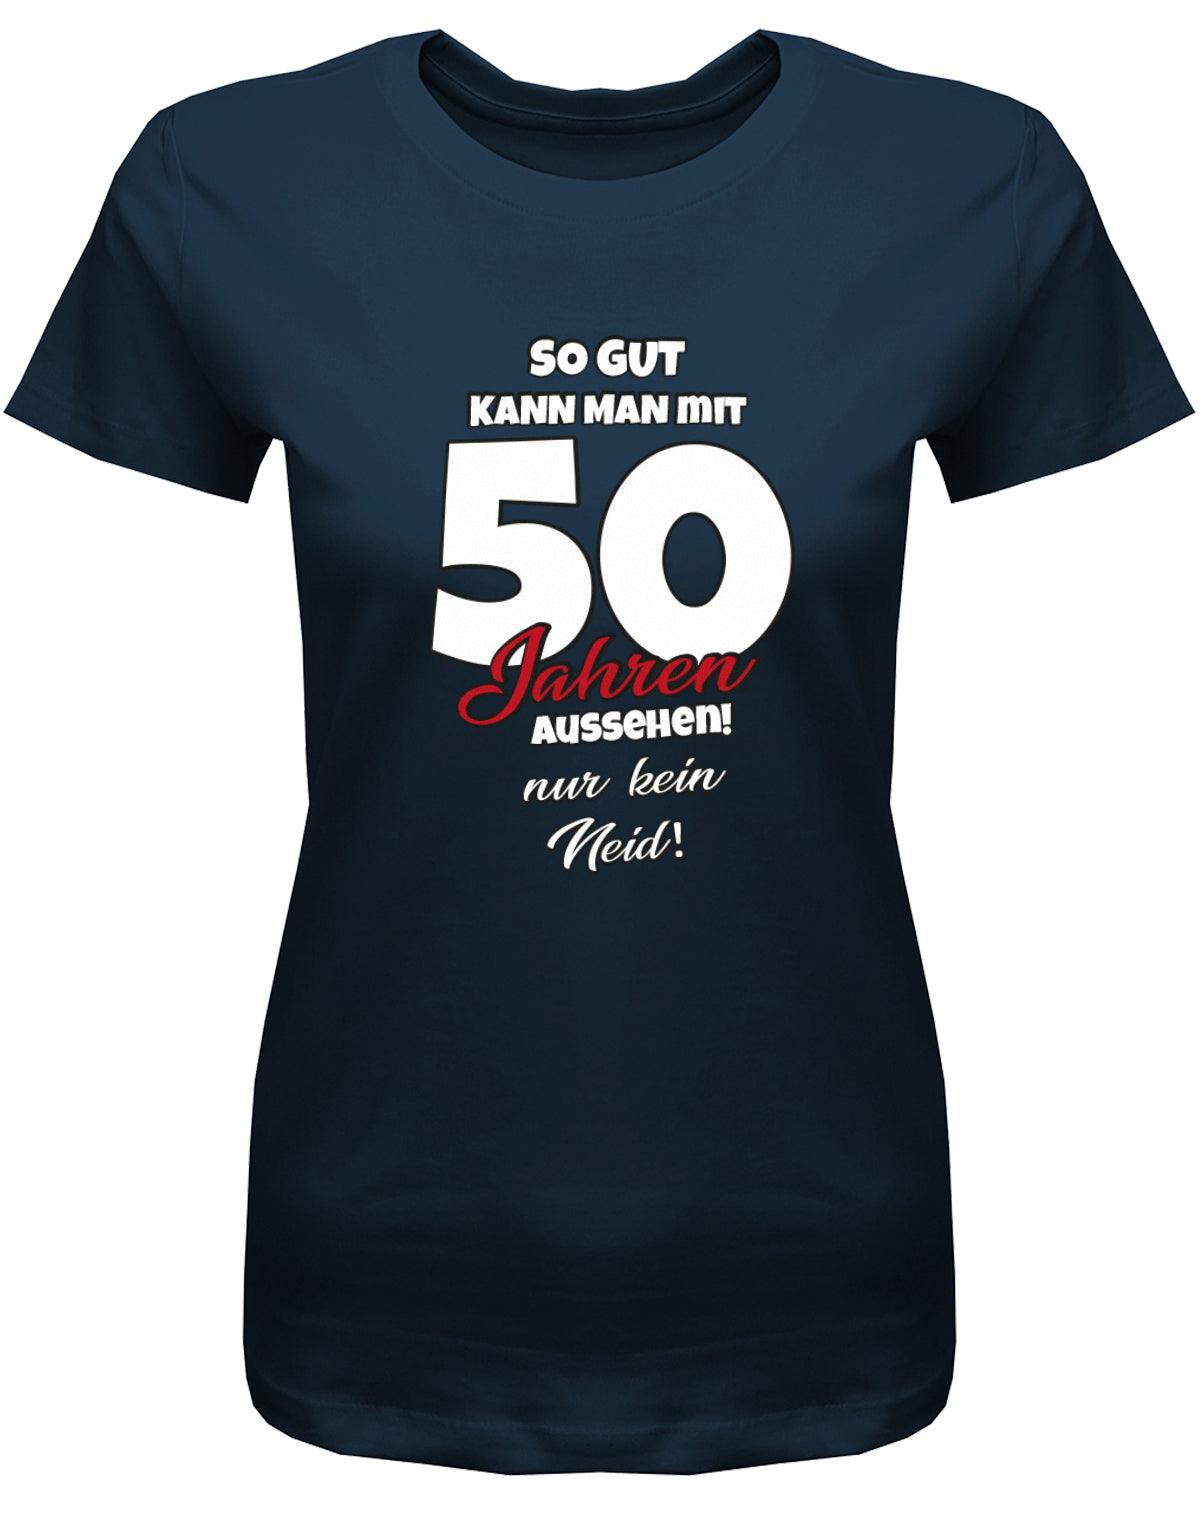 Lustiges T-Shirt zum 50 Geburtstag für die Frau Bedruckt mit So gut kann man mit 50 Jahren aussehen! Nur kein Neid! Navy